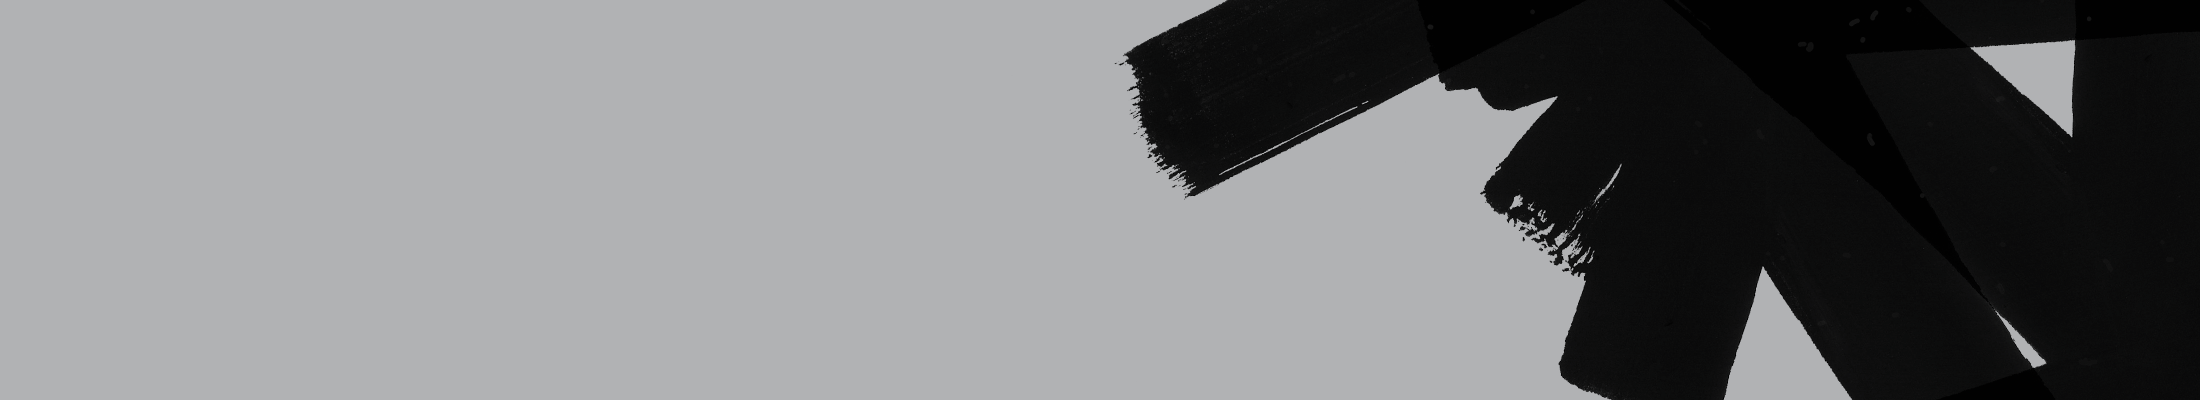 black brush strokes on grey background